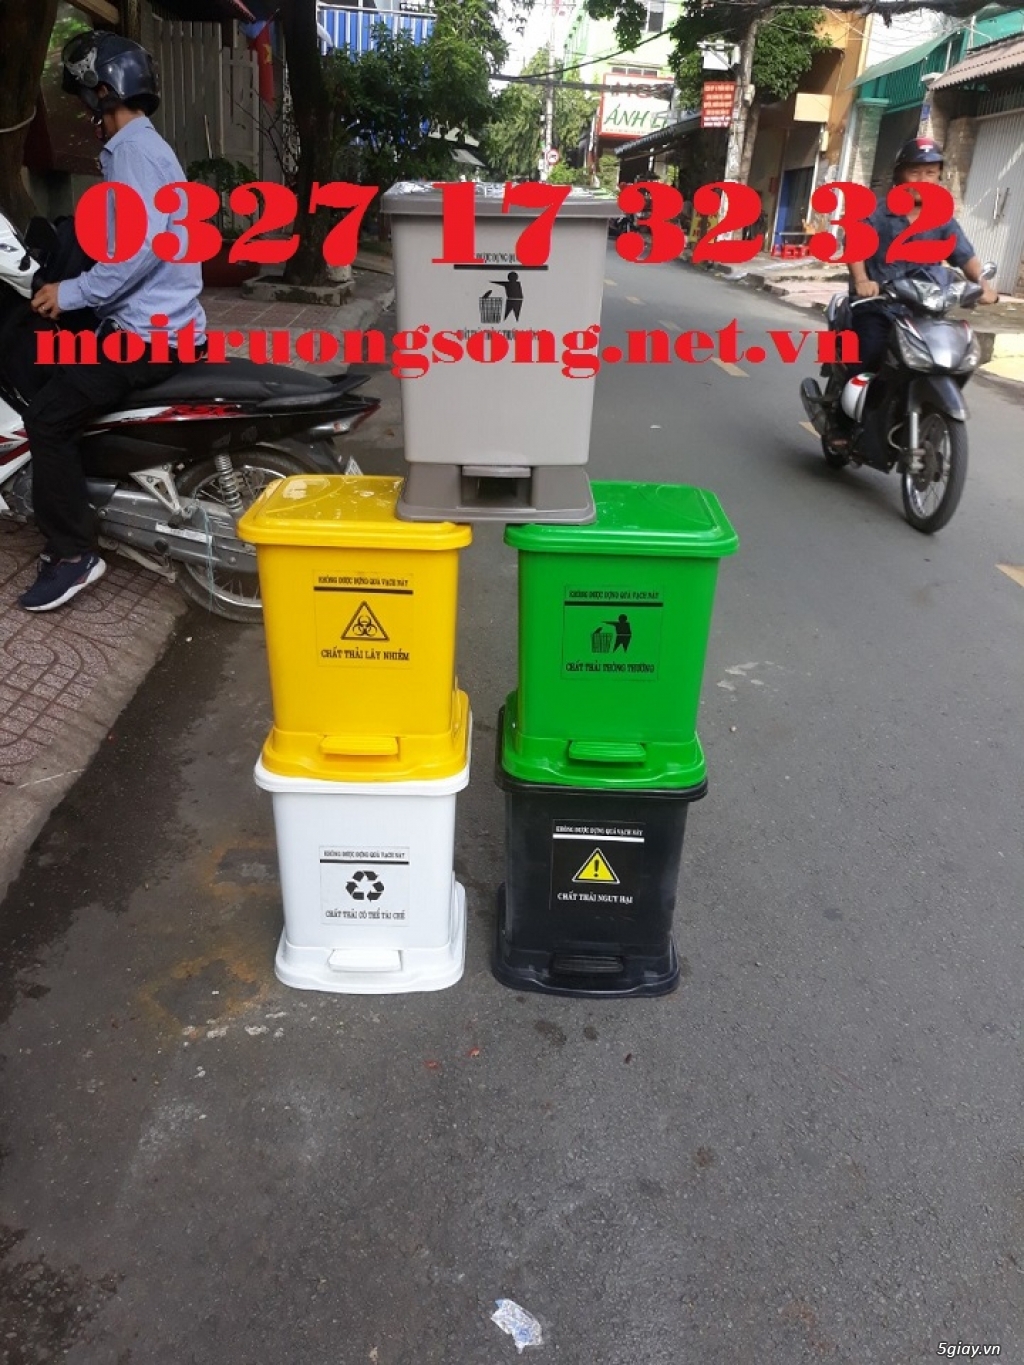 Mua bán thùng rác y tế 20 lít nhiều màu giá rẻ toàn quốc - 0327173232 - 2